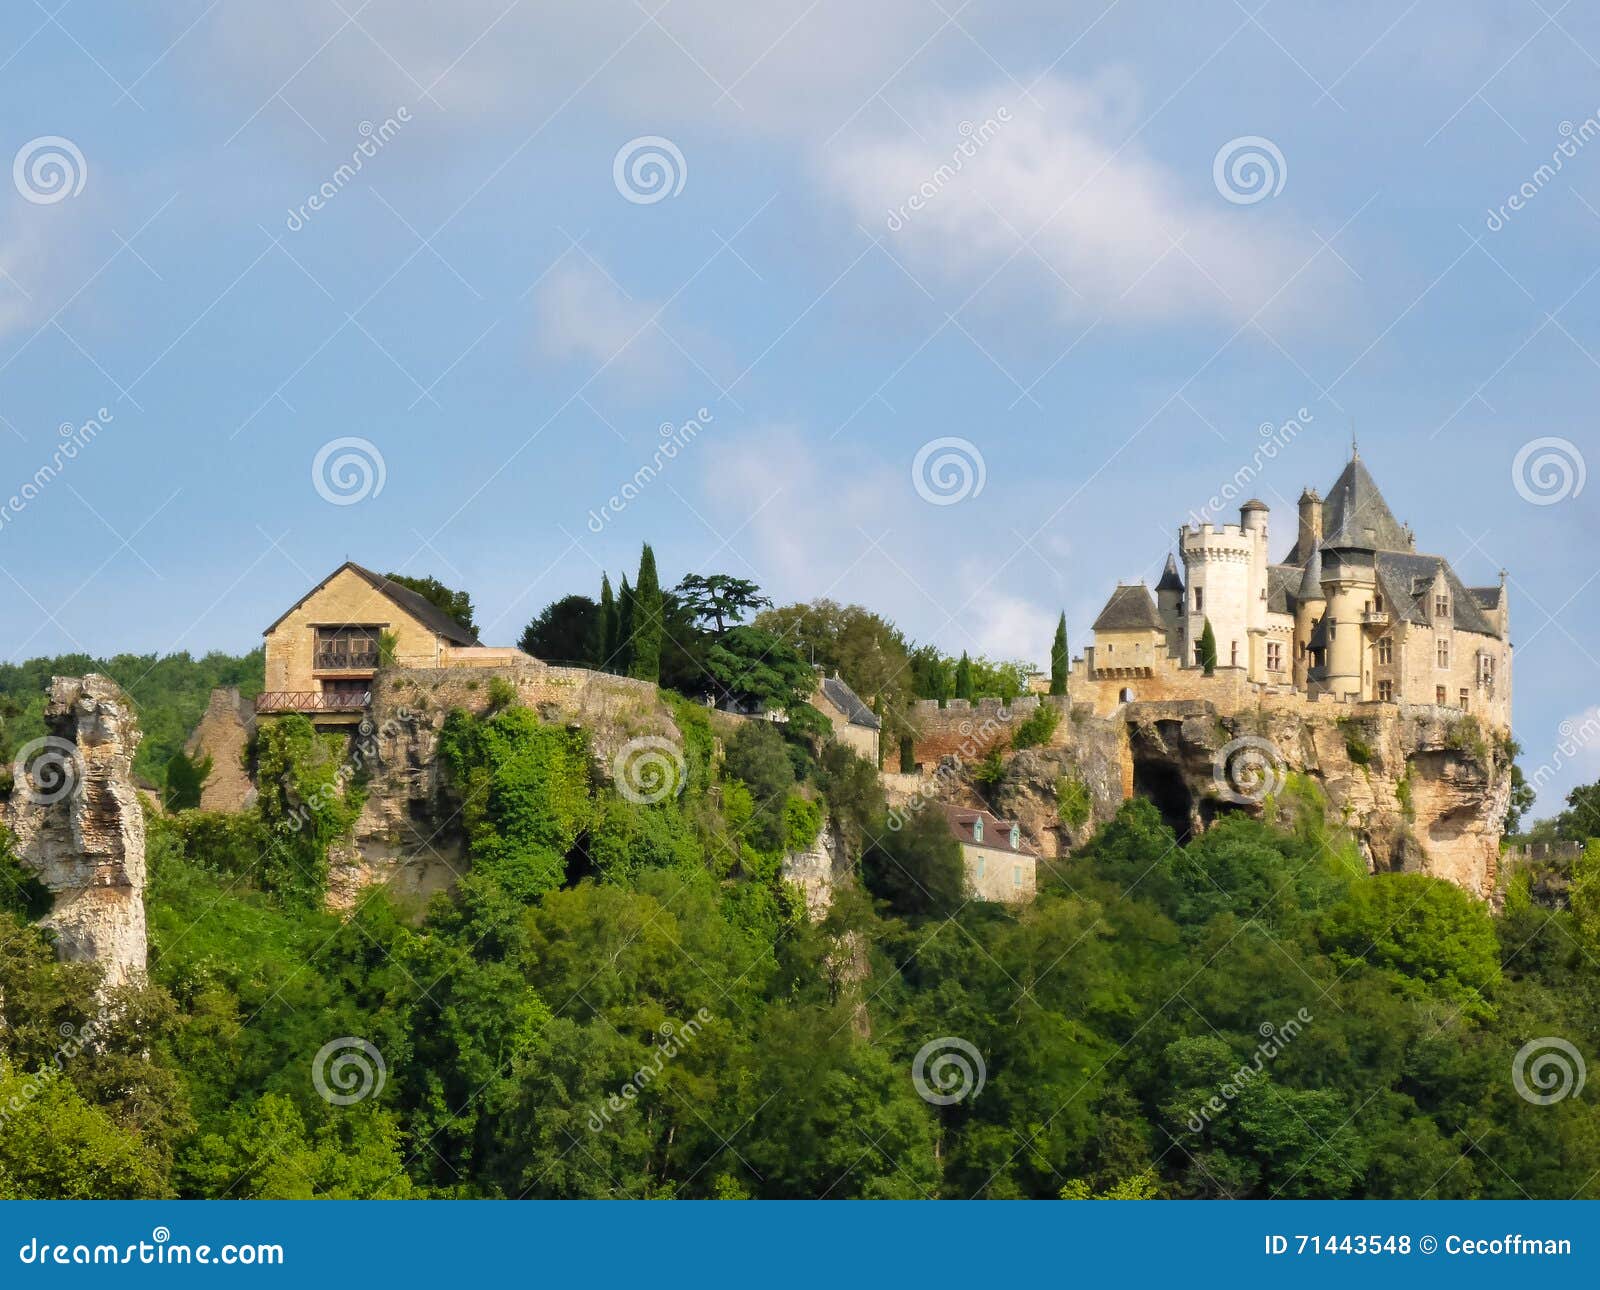 Chateau de Montfort stock photo. Image of france, union - 71443548